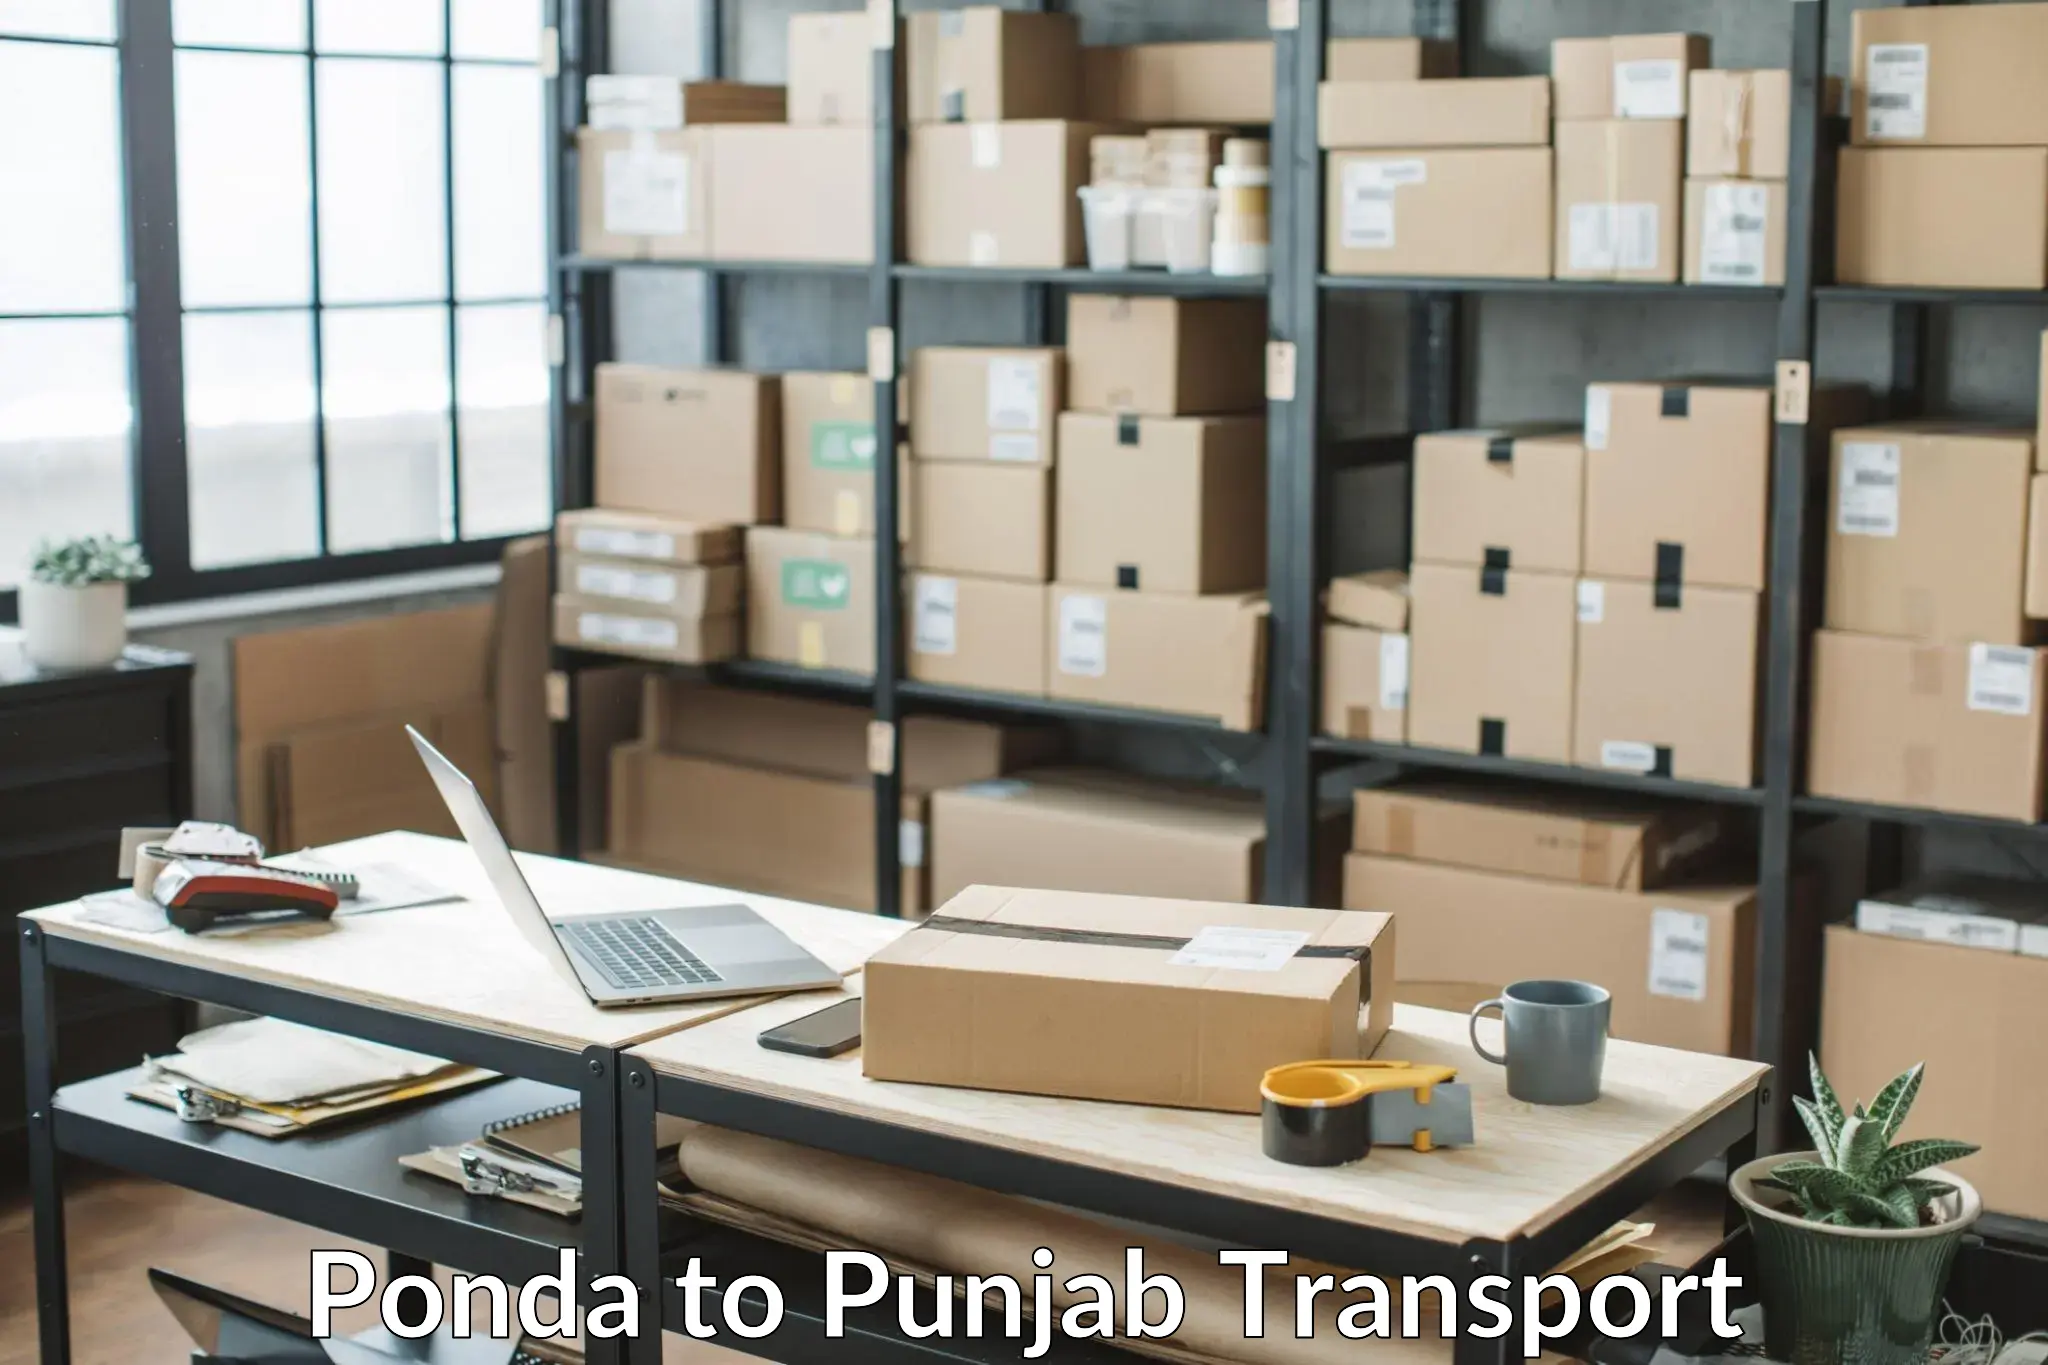 Bike shipping service Ponda to Punjab